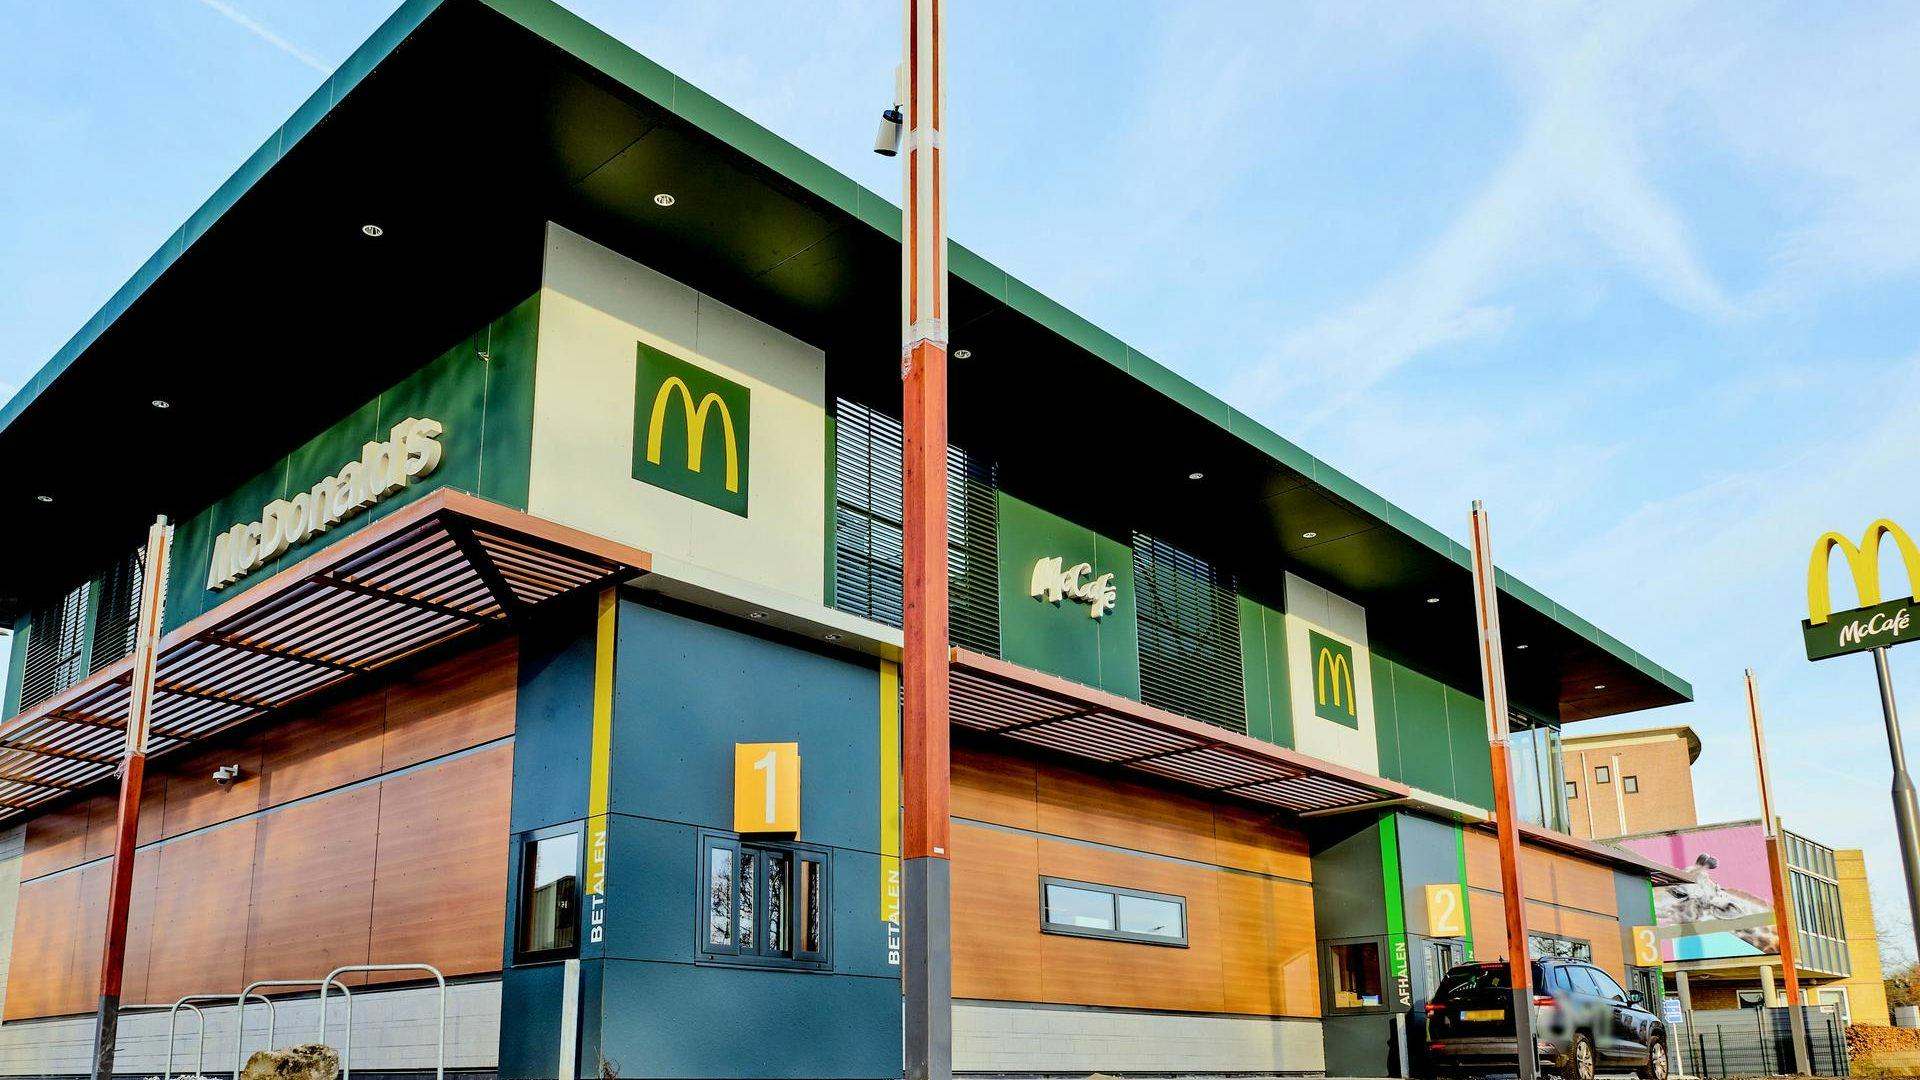 McDonald's restaurant Stadskanaal geheel vernieuwd